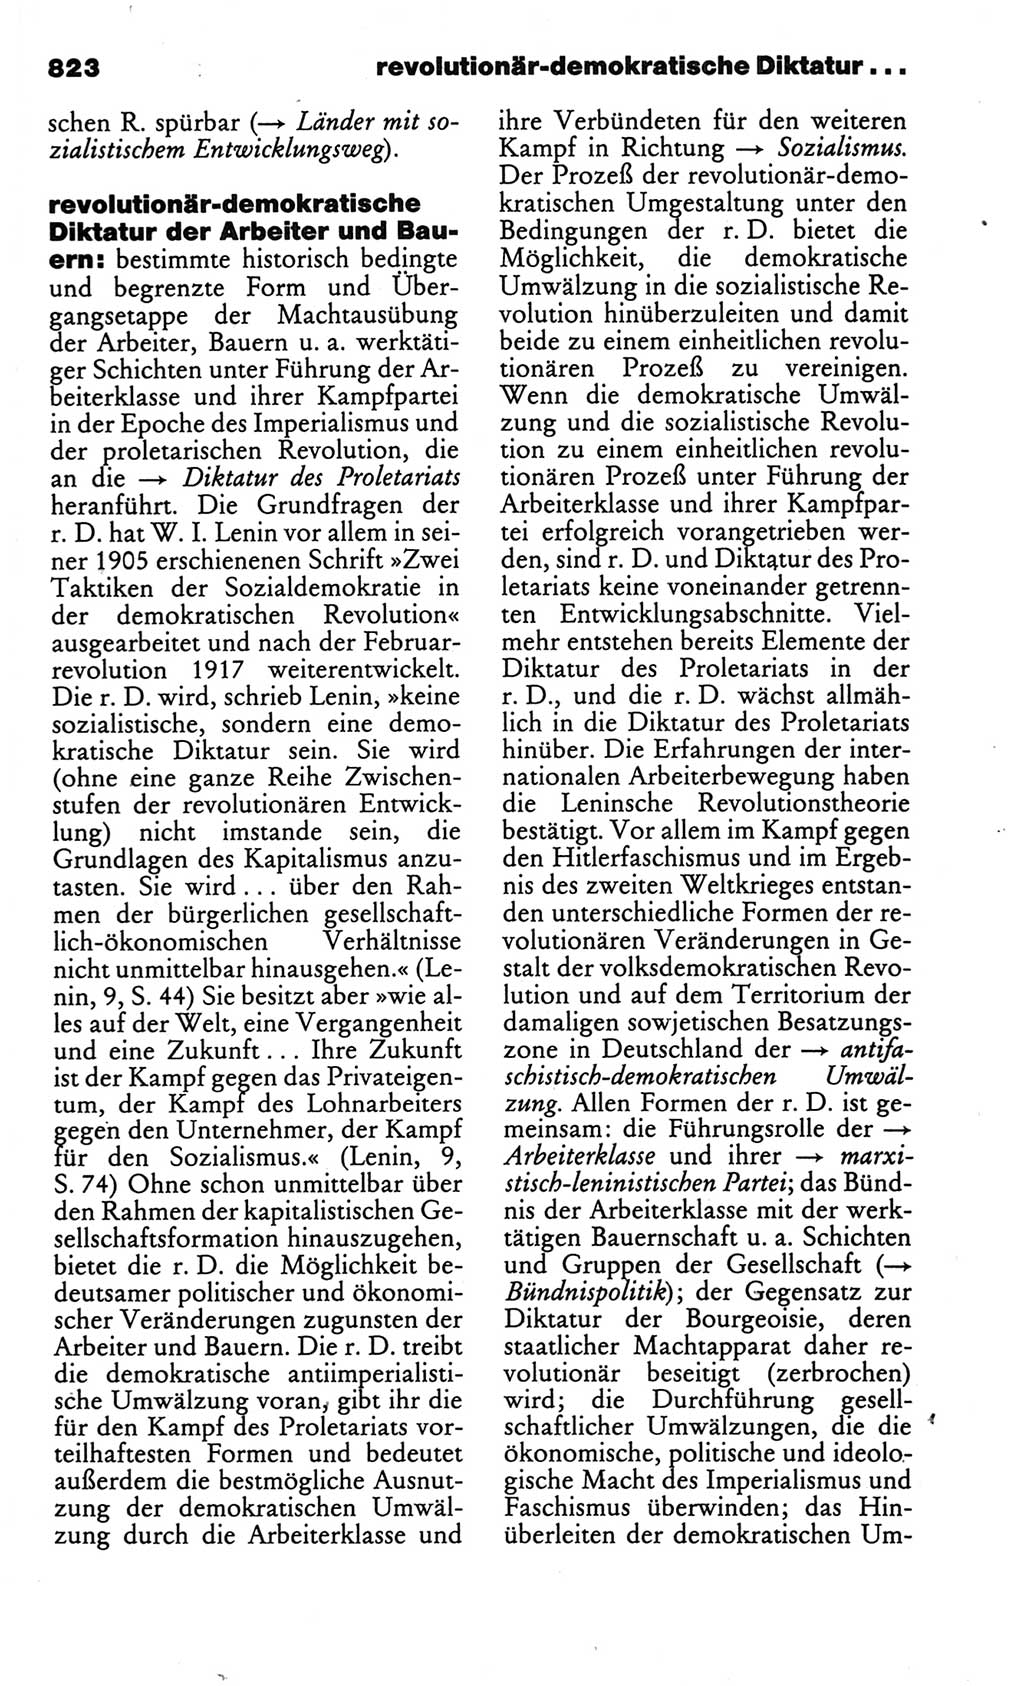 Kleines politisches Wörterbuch [Deutsche Demokratische Republik (DDR)] 1986, Seite 823 (Kl. pol. Wb. DDR 1986, S. 823)